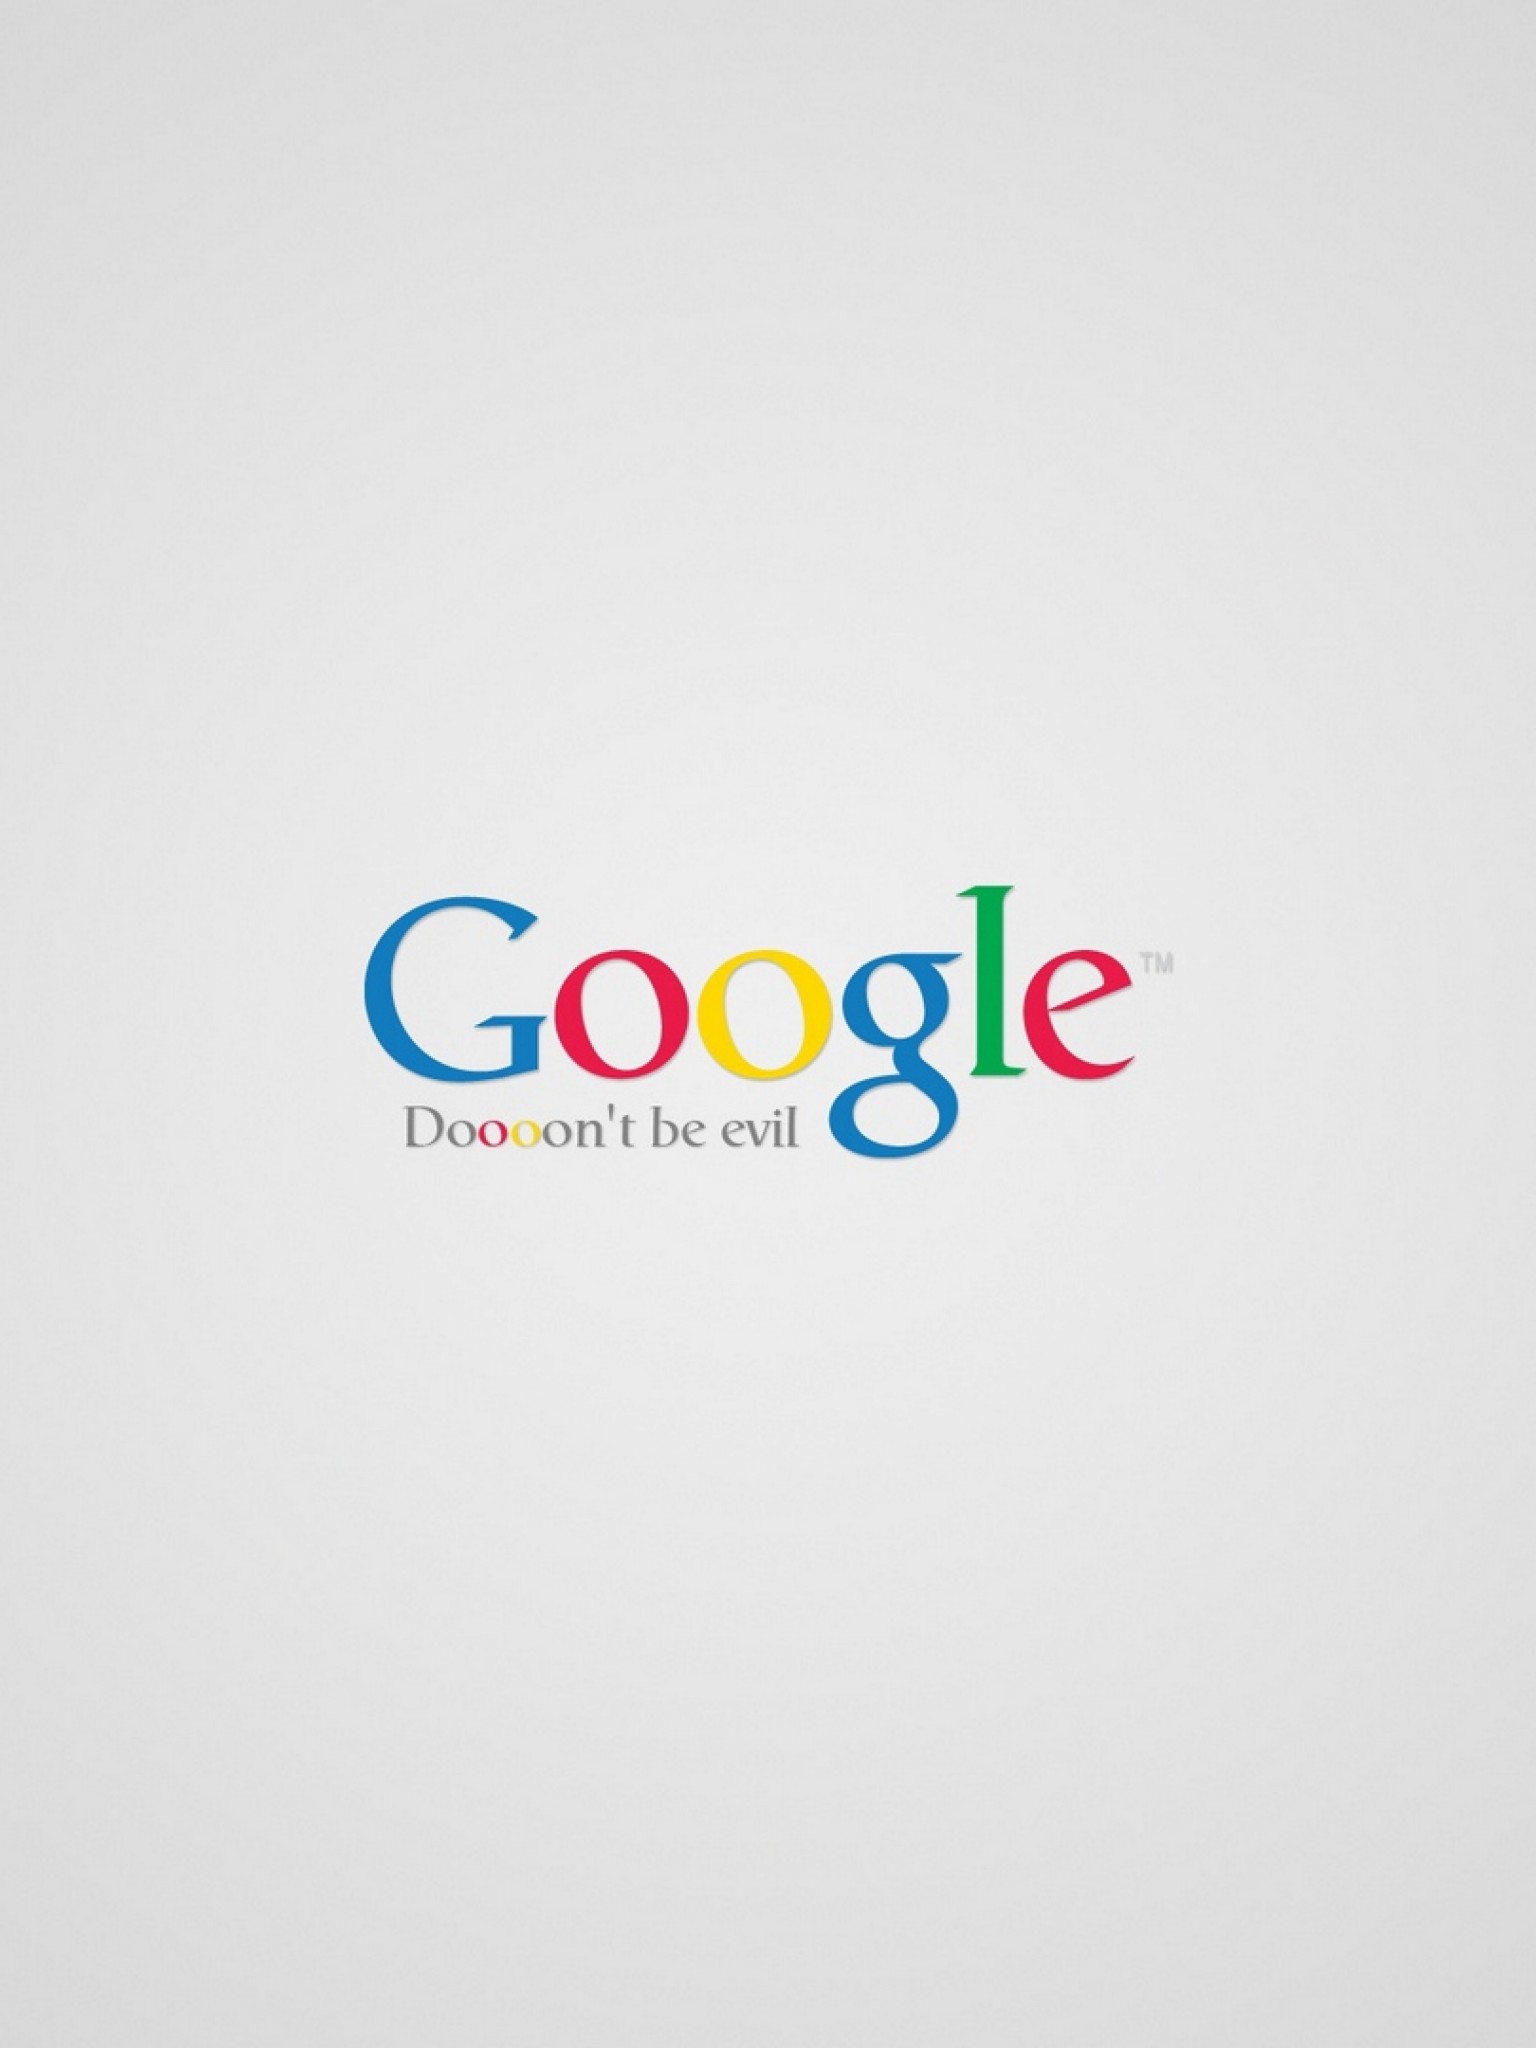 Again google. Gugli. Googool. Giidle.